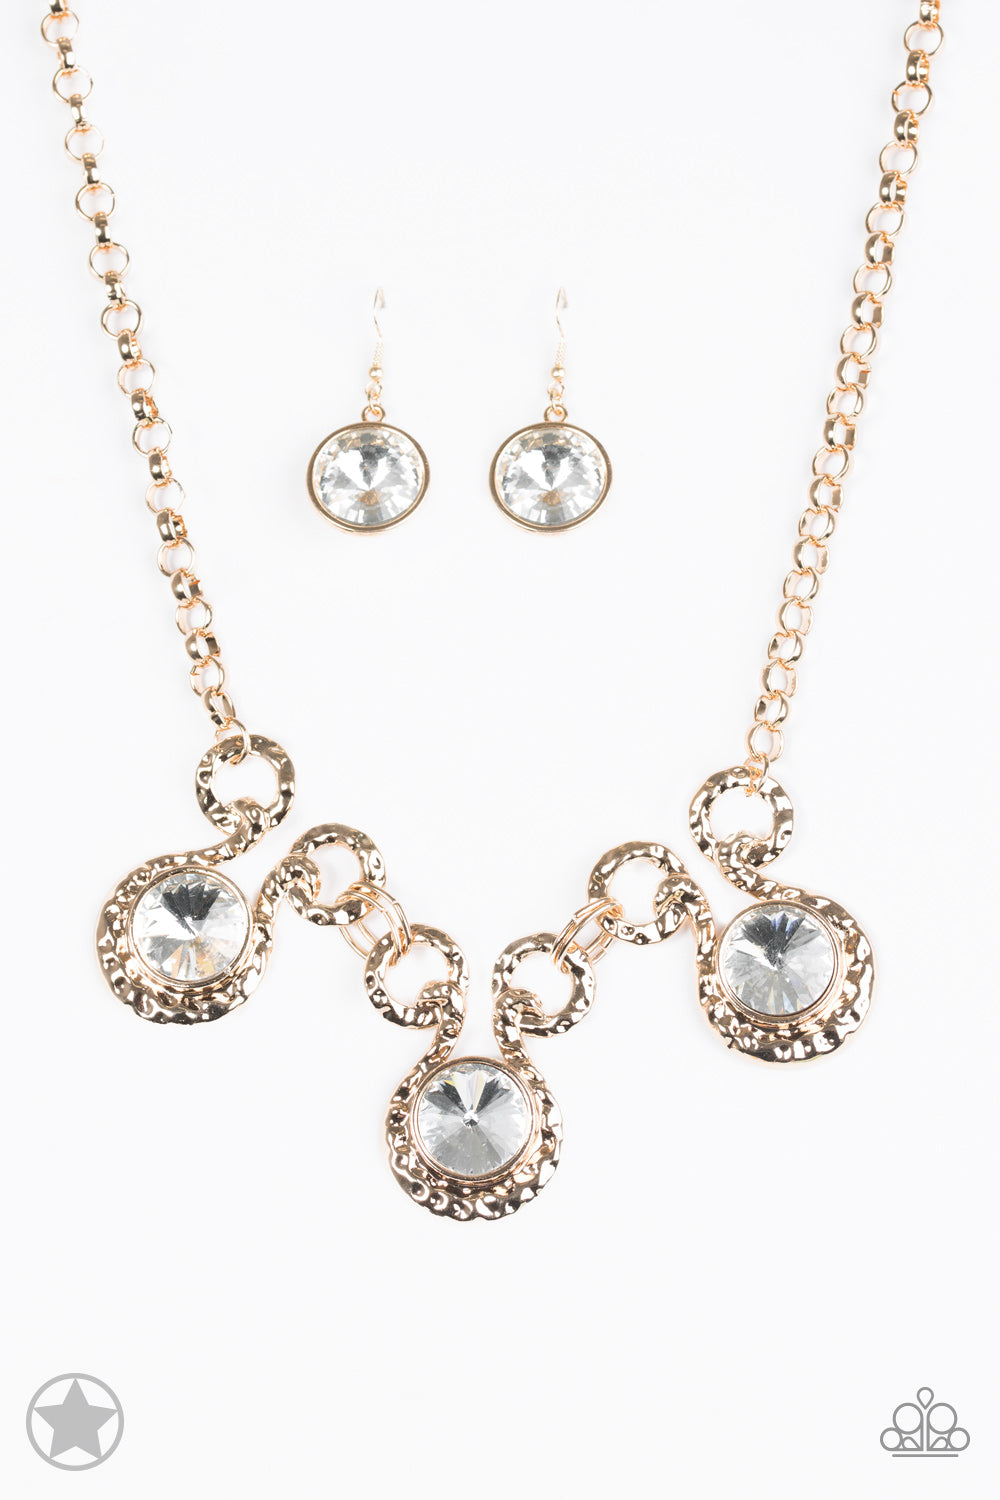 Hypnotized Gold Paparazzi Necklaces Cashmere Pink Jewels - Cashmere Pink Jewels & Accessories, Cashmere Pink Jewels & Accessories - Paparazzi